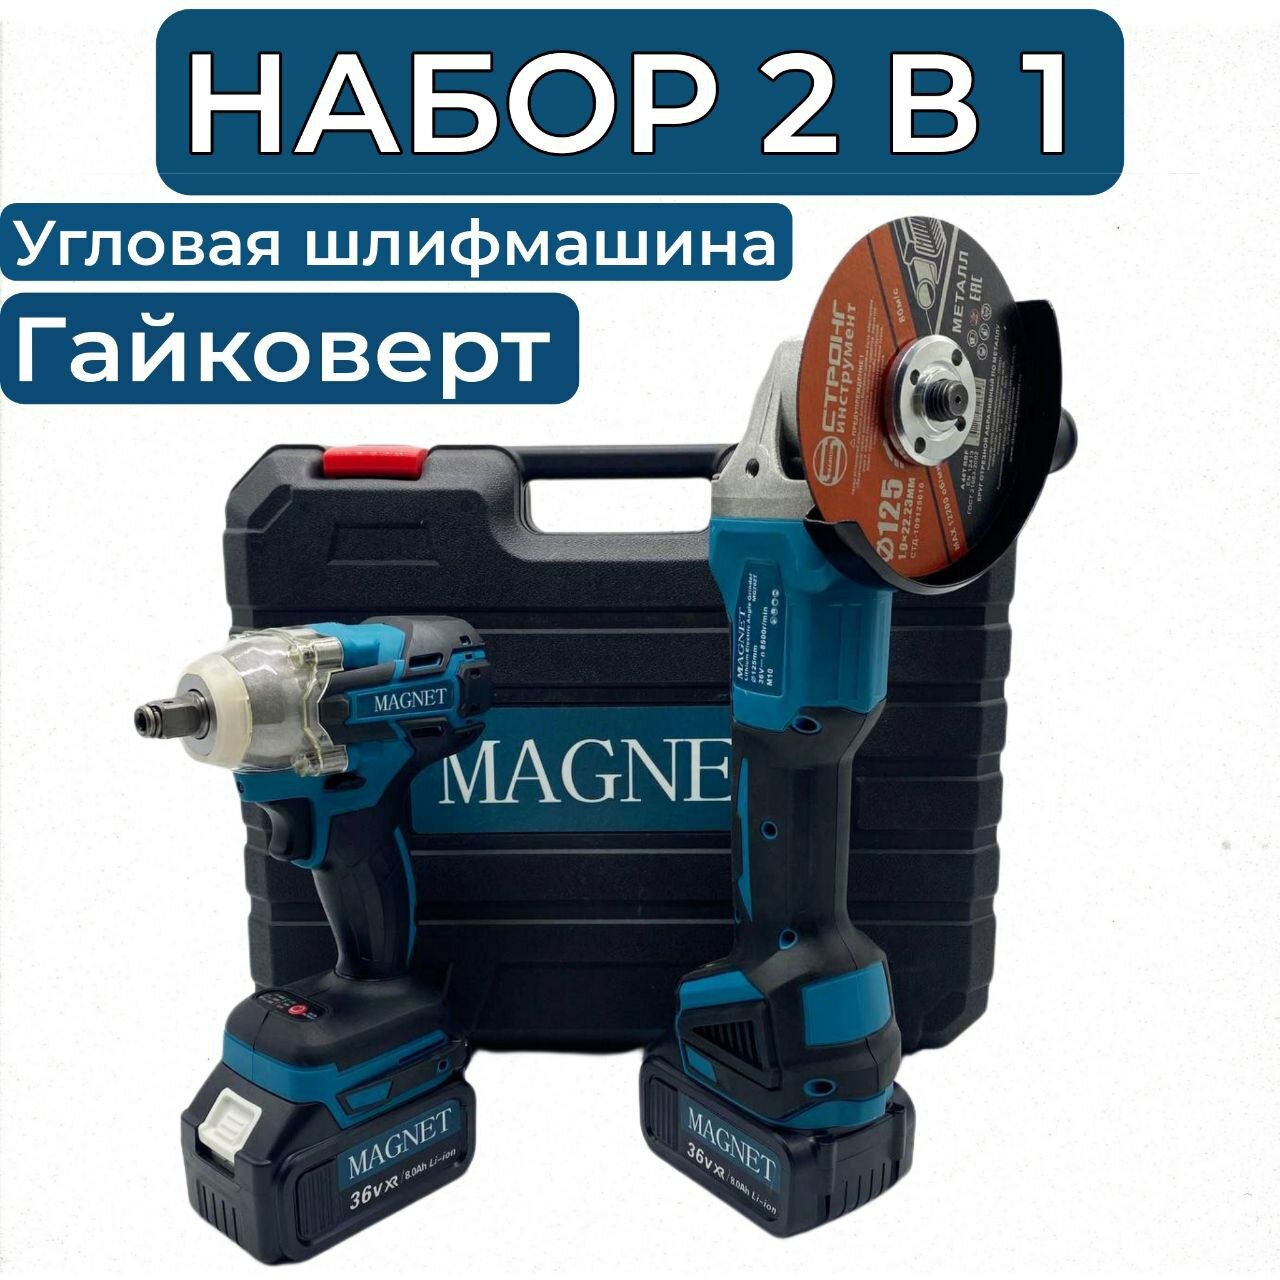 Набор электроинструментов Magnet 2 в 1 в комплекте 2 АКБ/Гайковёрт и болгарка (ушм)/аккумуляторный набор инструментов Магнет